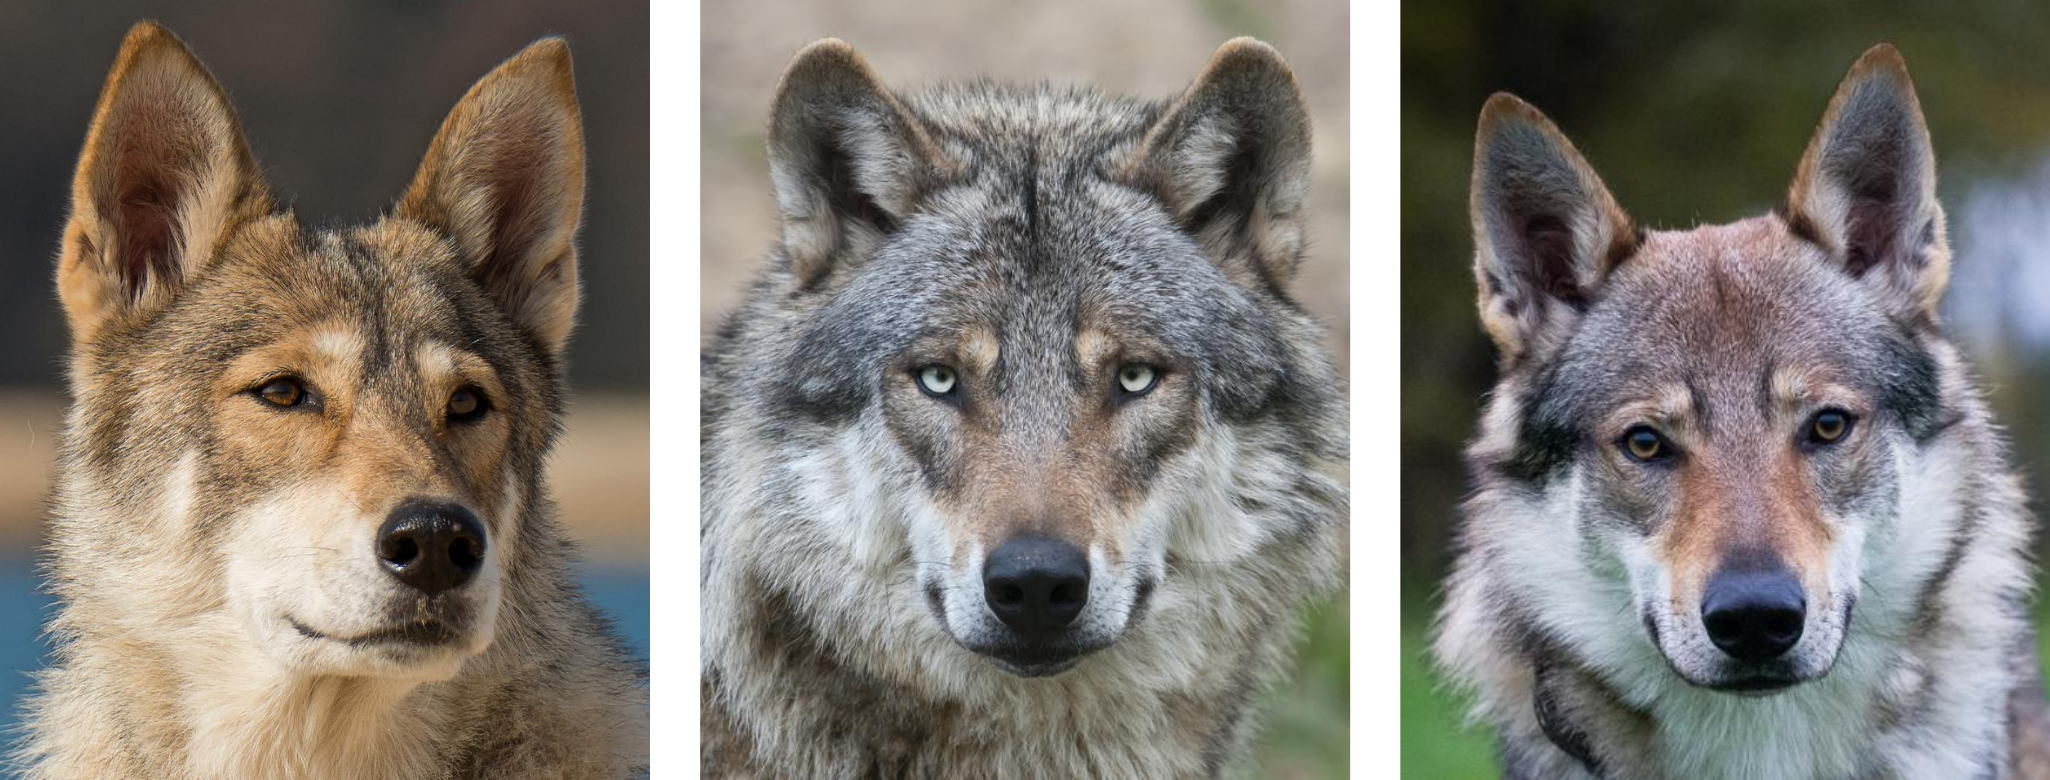 Let op de oren van de wolf (in het midden) t.o.v. enkele hondse look-a-likes (links en rechts)